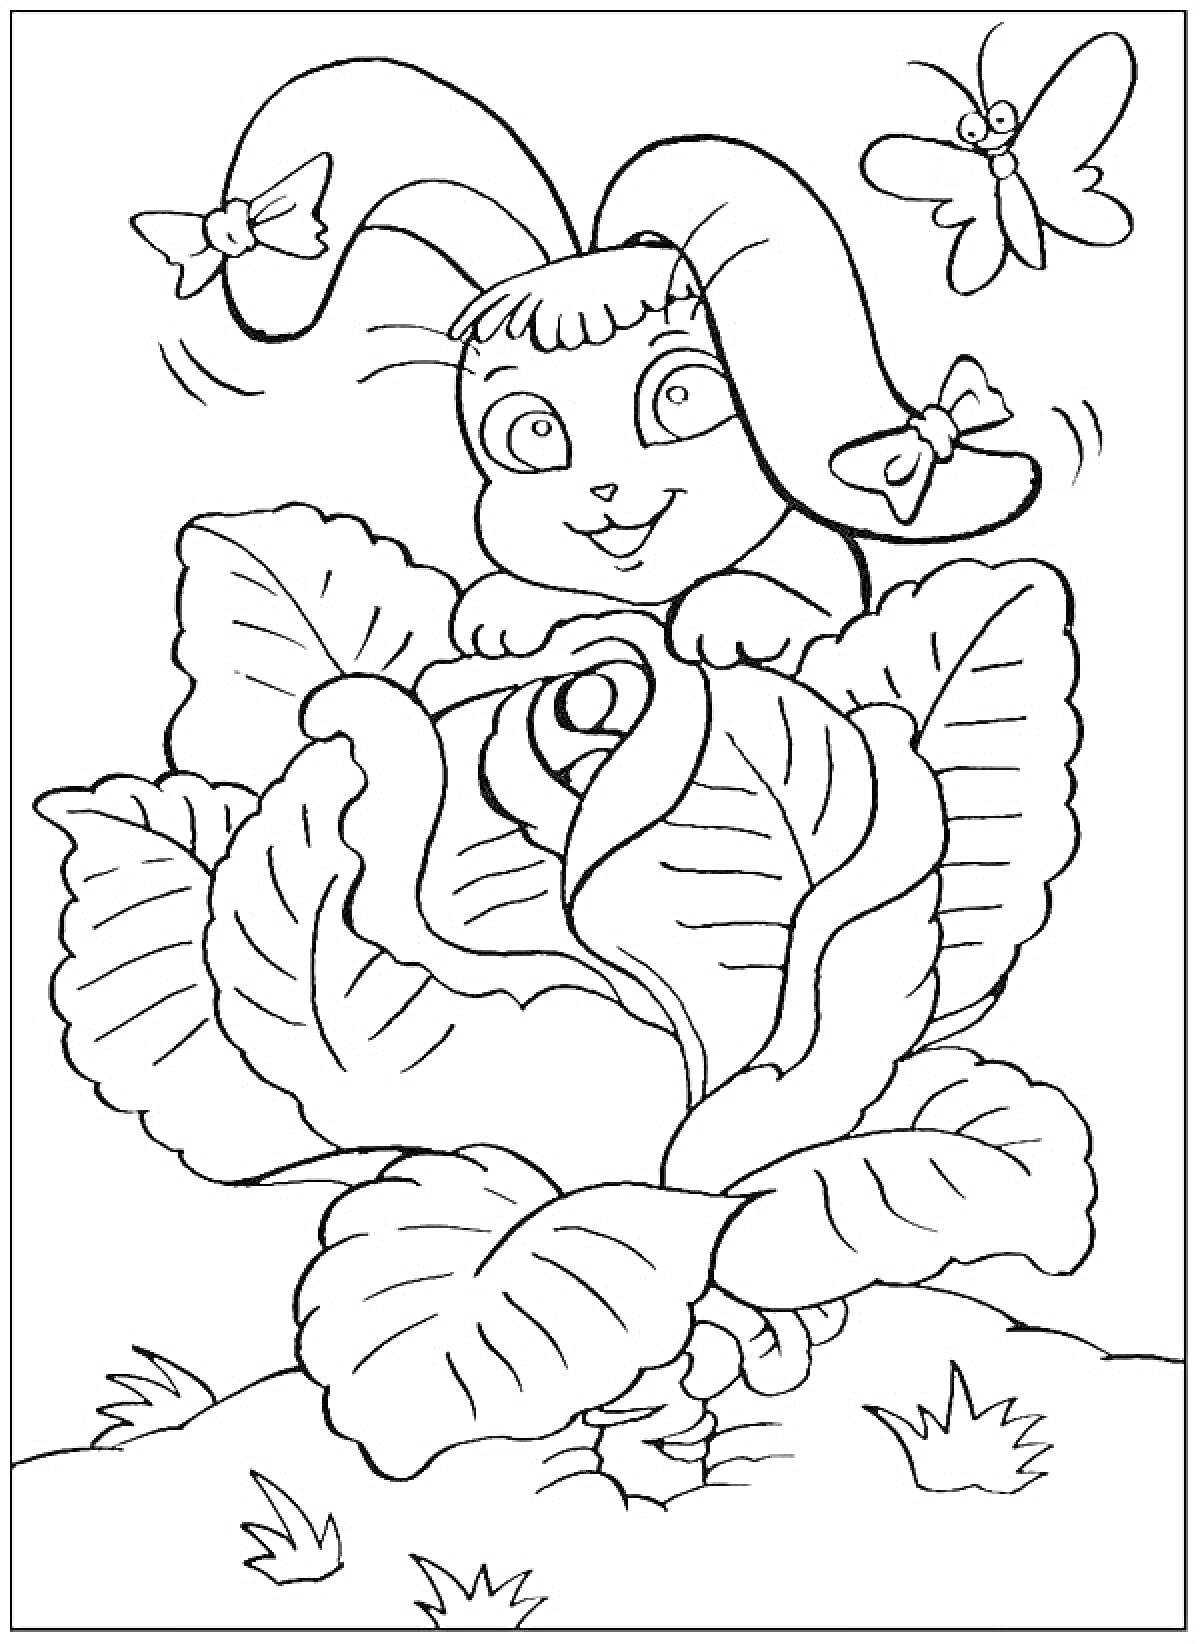 Раскраска Кролик с бантиками в капусте и бабочками